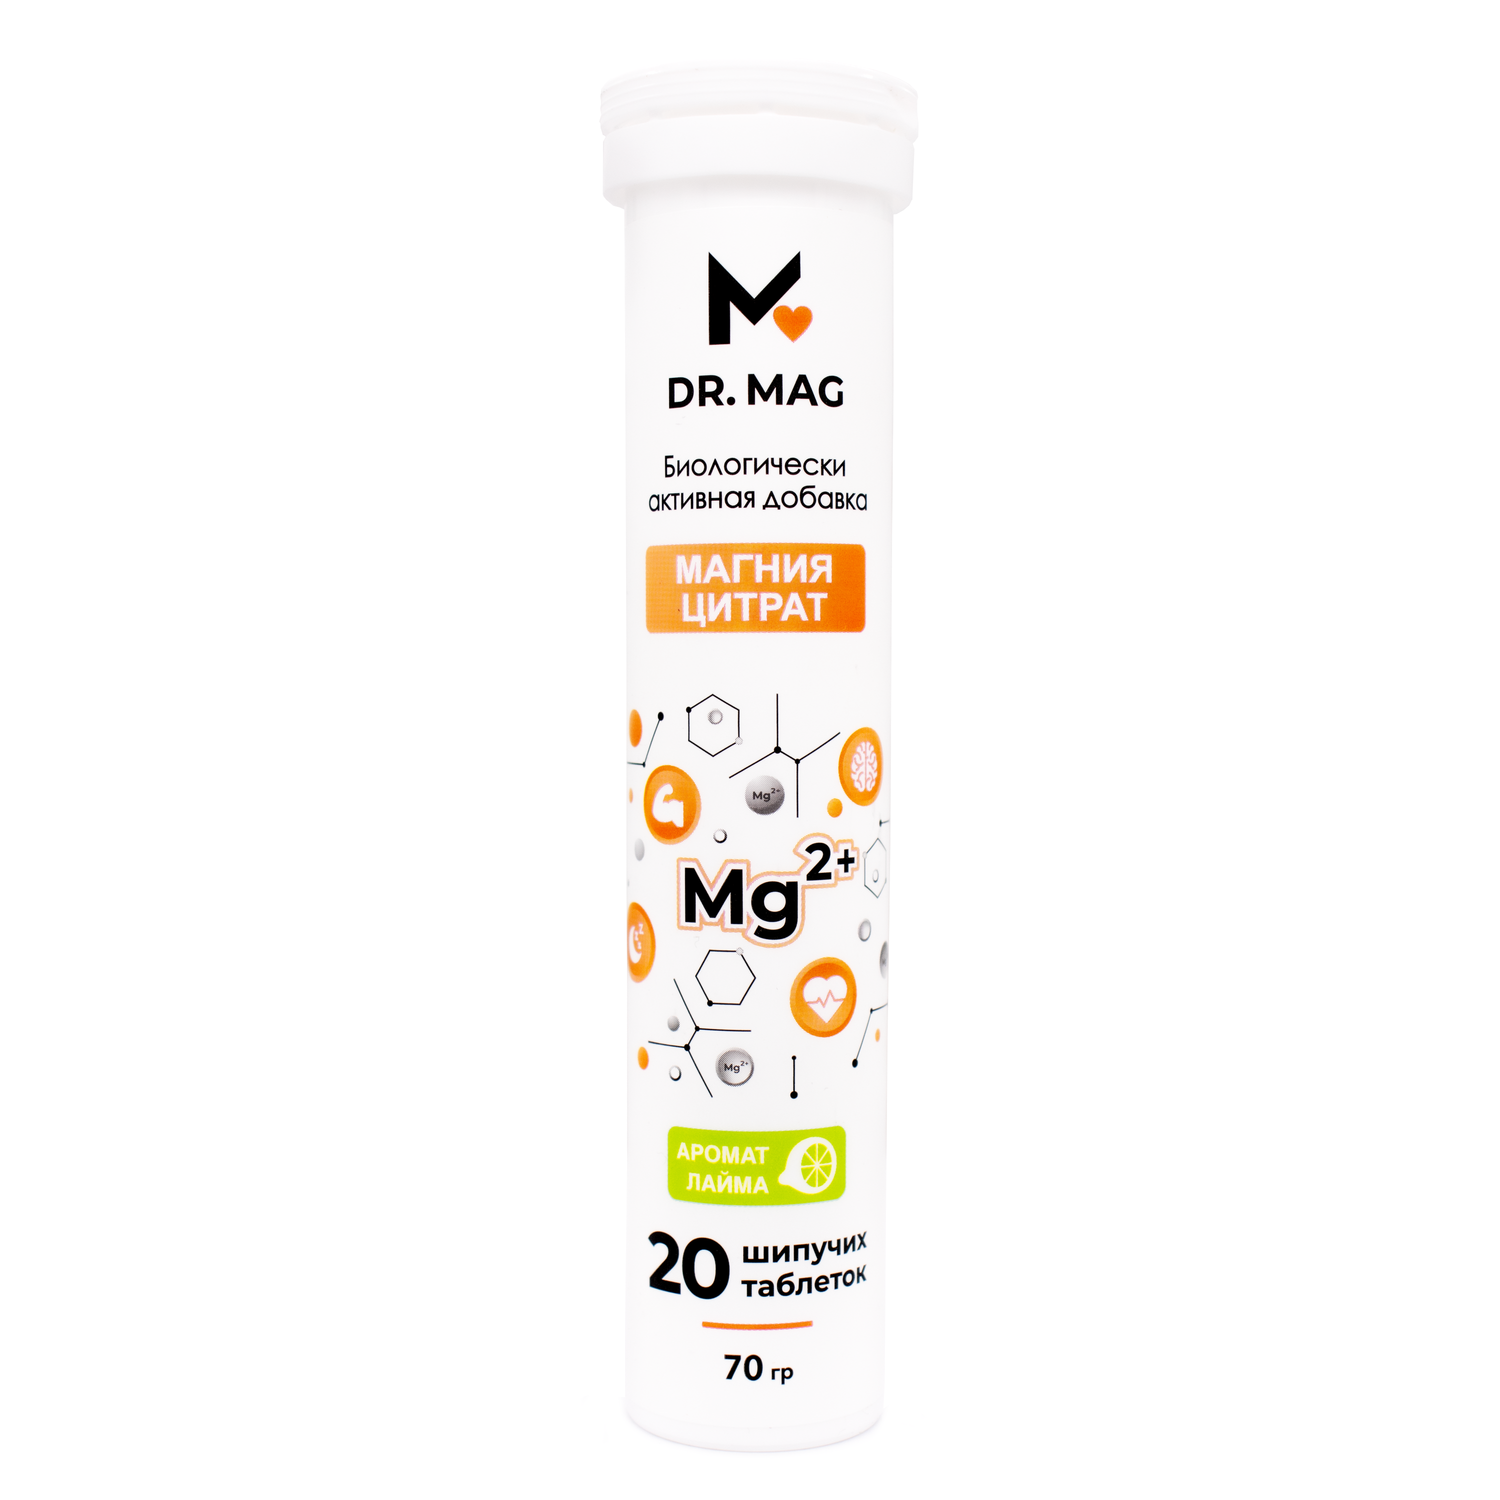 БАД Dr.Mag Магний цитрат в форме шипучих таблеток 3.5г 20шт. со вкусом лайма - фото 8